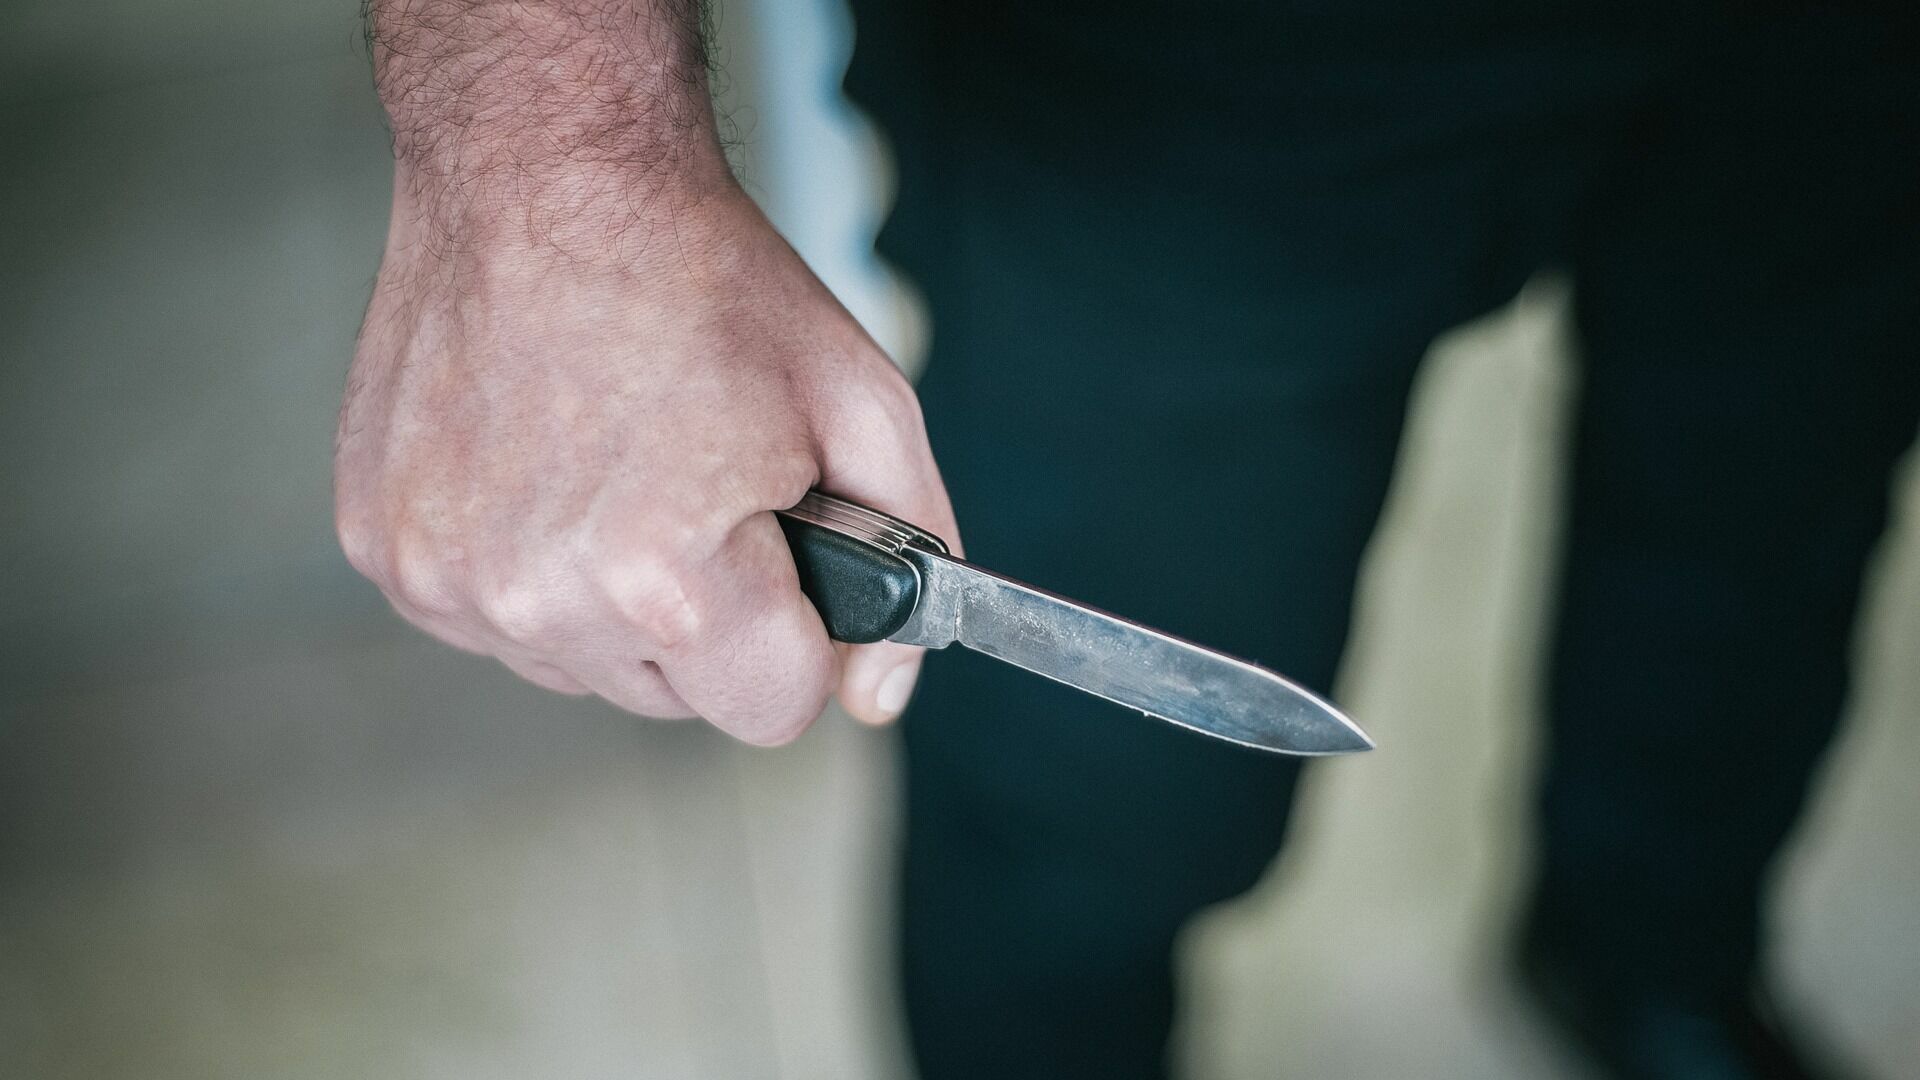 Охранник в Белгороде порезал ножом сотрудницу общепита из-за невзаимной любви